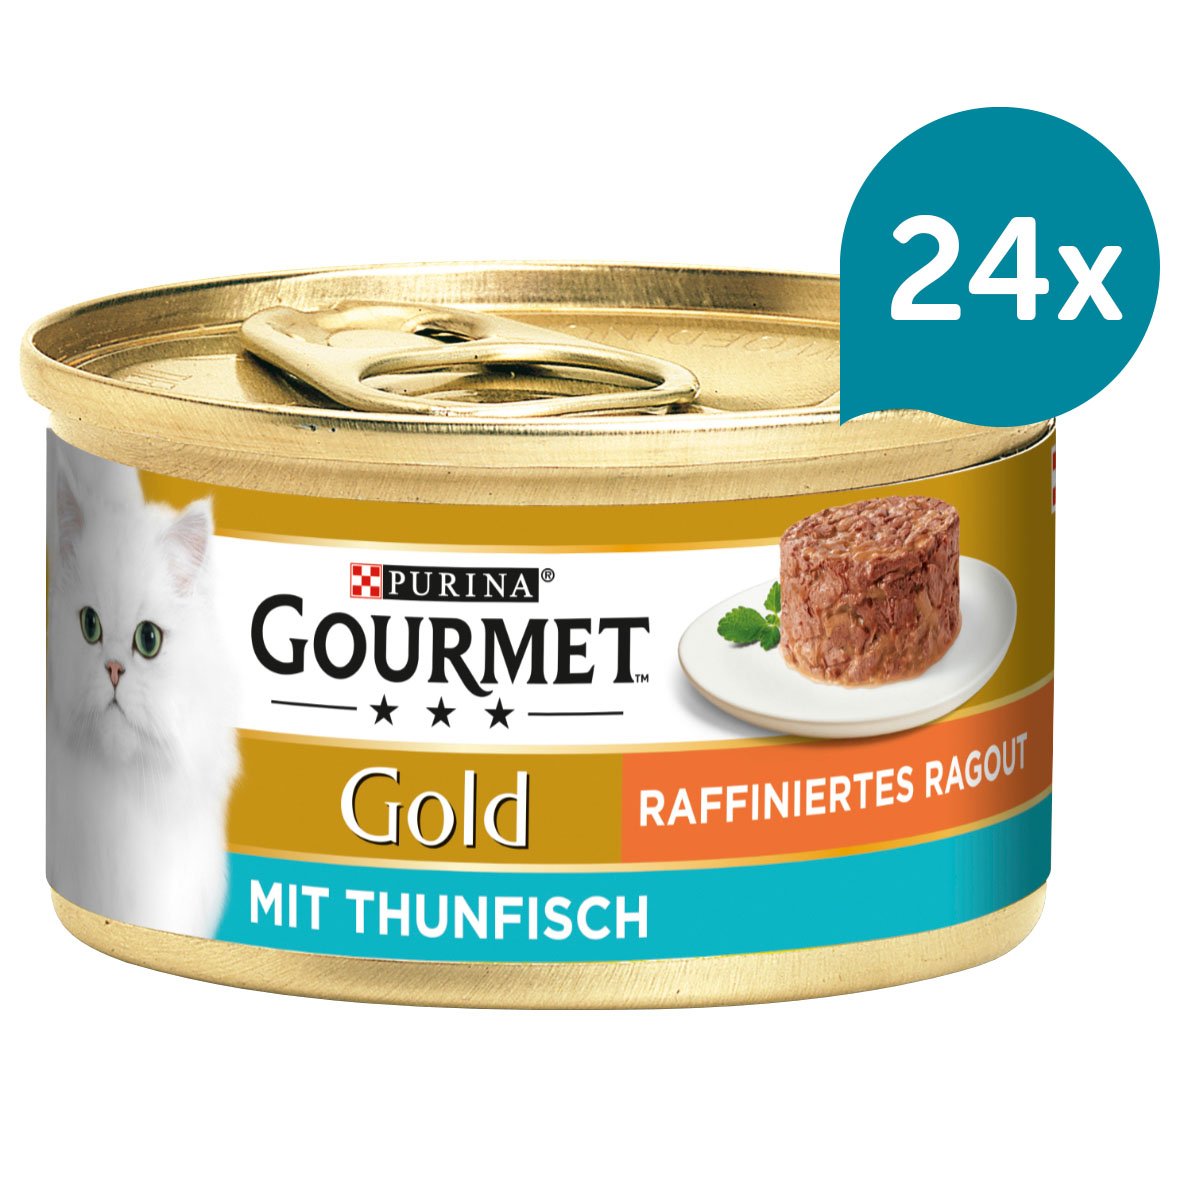 GOURMET Gold Raffiniertes Ragout mit Thunfisch 24x85g von Gourmet